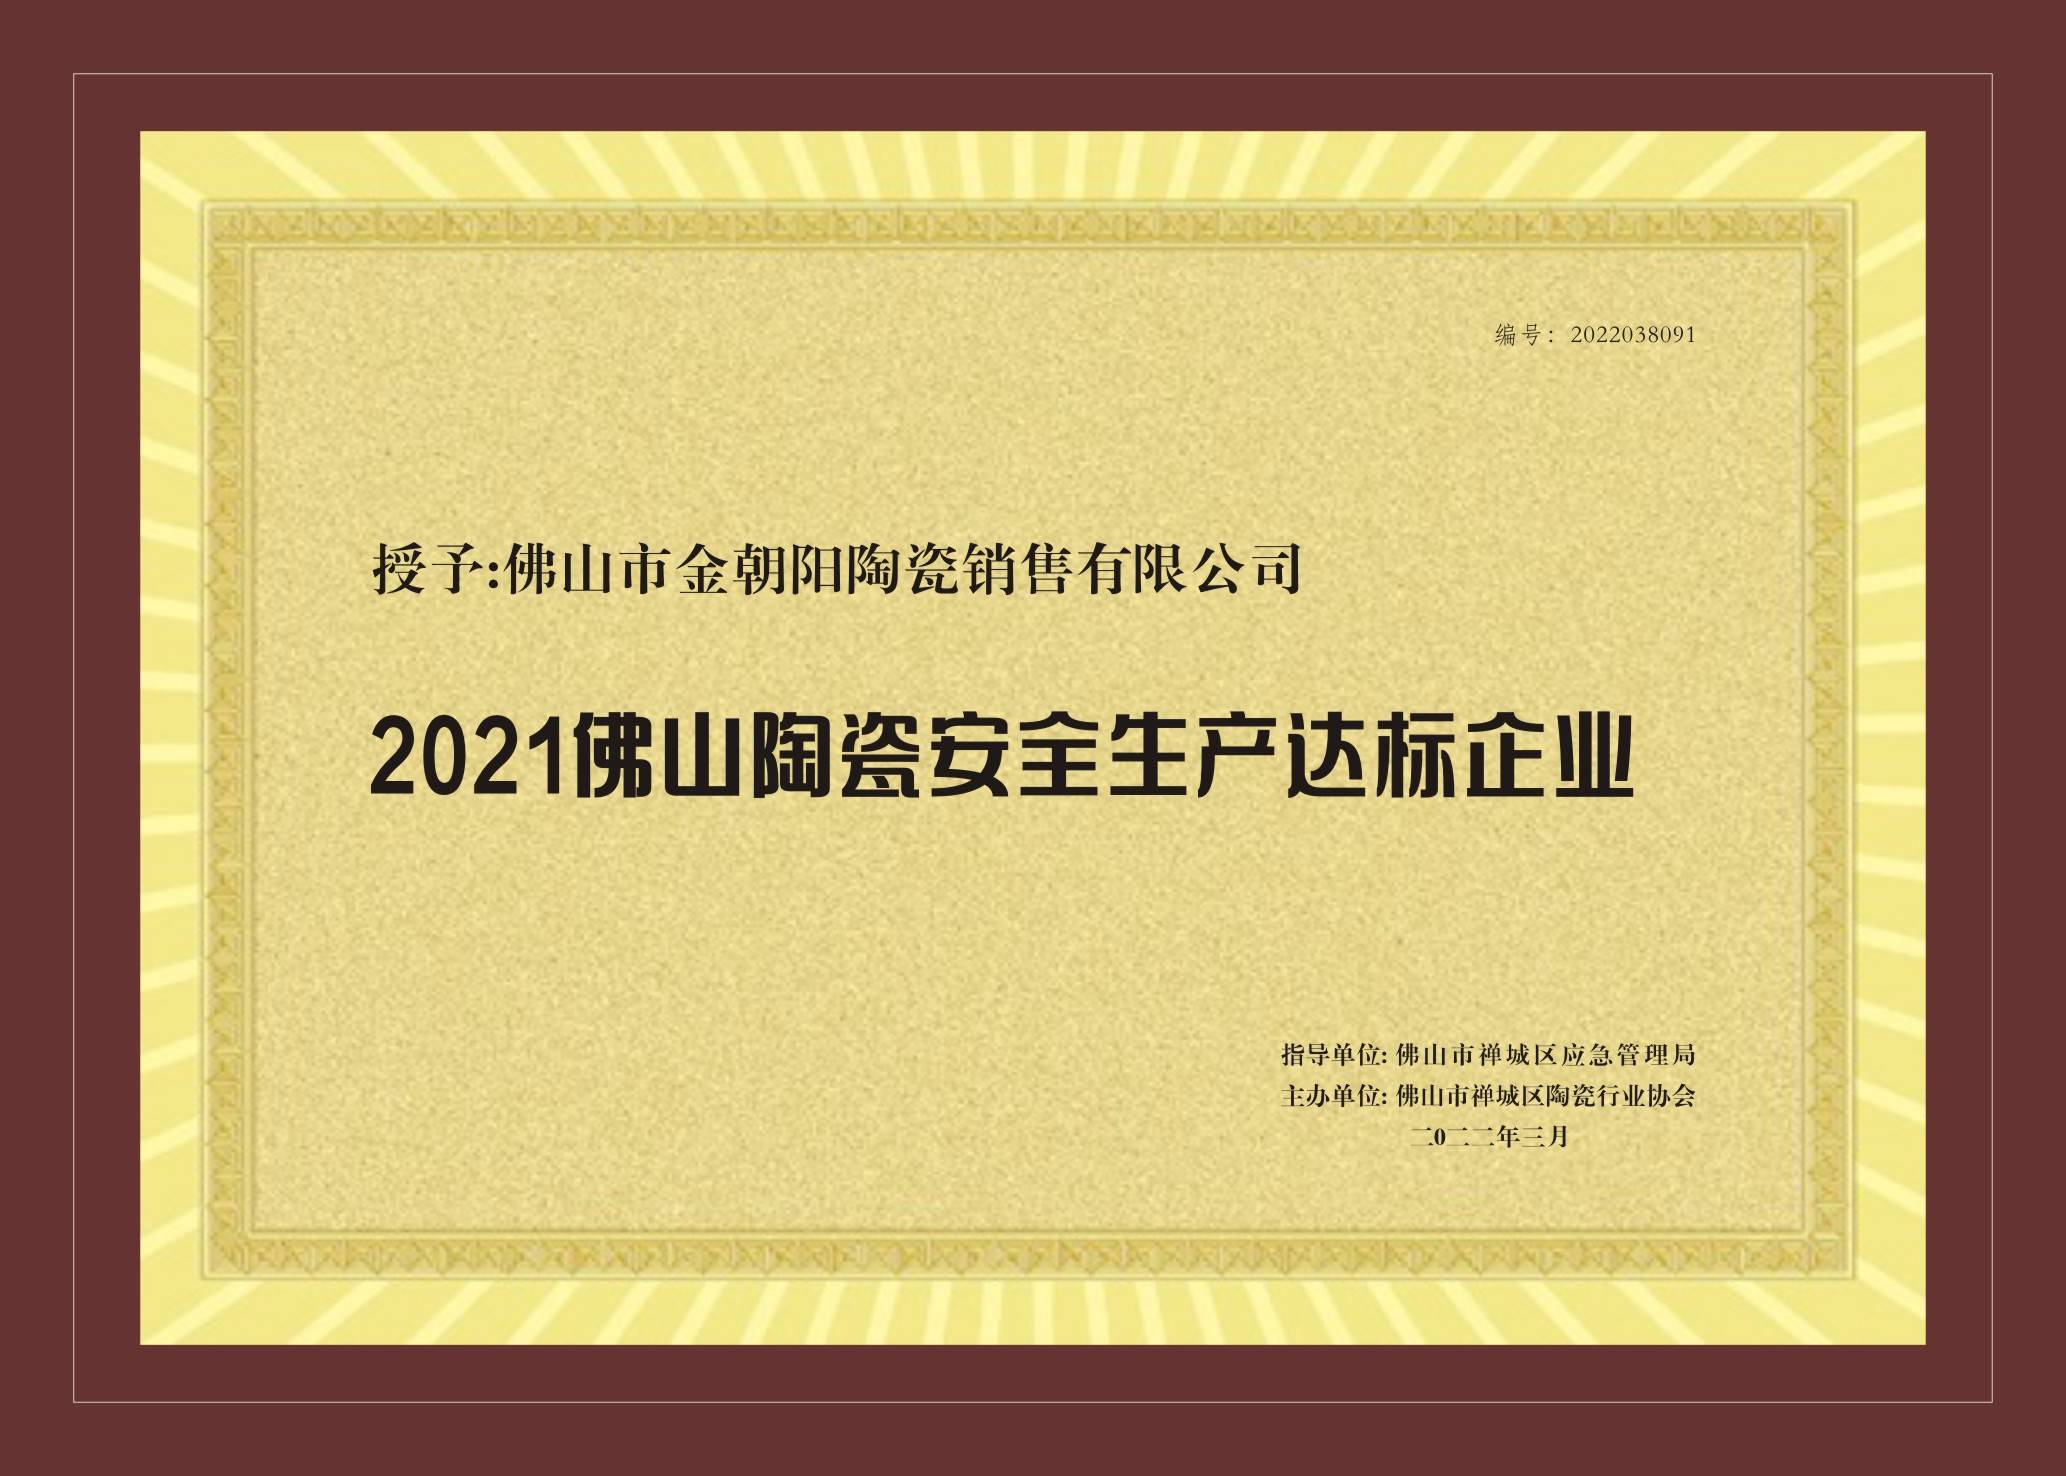 新明珠集团实力品牌金朝阳荣获2021佛山陶瓷安全达标企业等两项荣誉(图4)